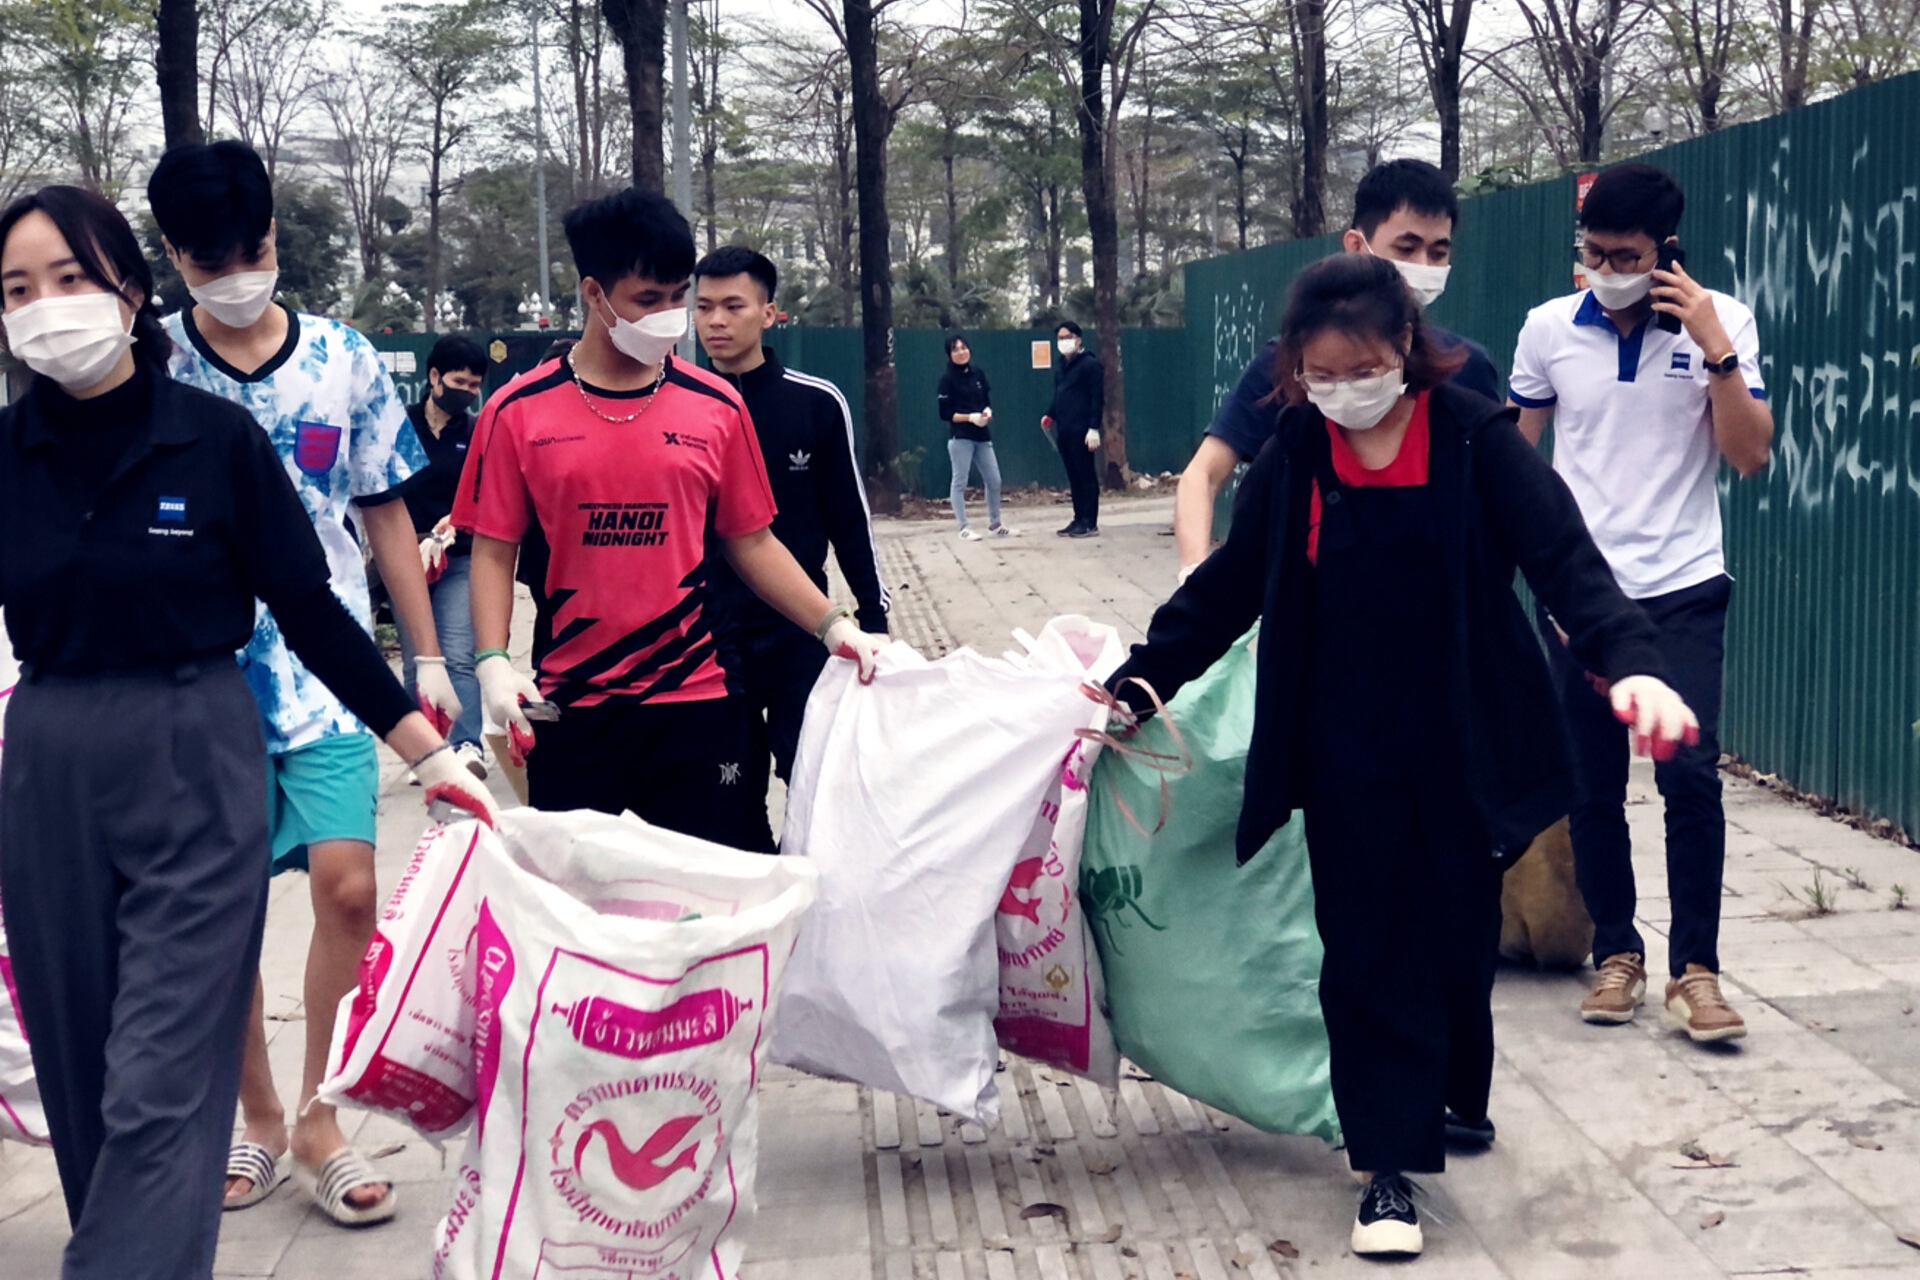 ZEISS Mitarbeitende in Vietnam (Ho Chi Mingh & Hanoi) sammeln Müll am Earth Day